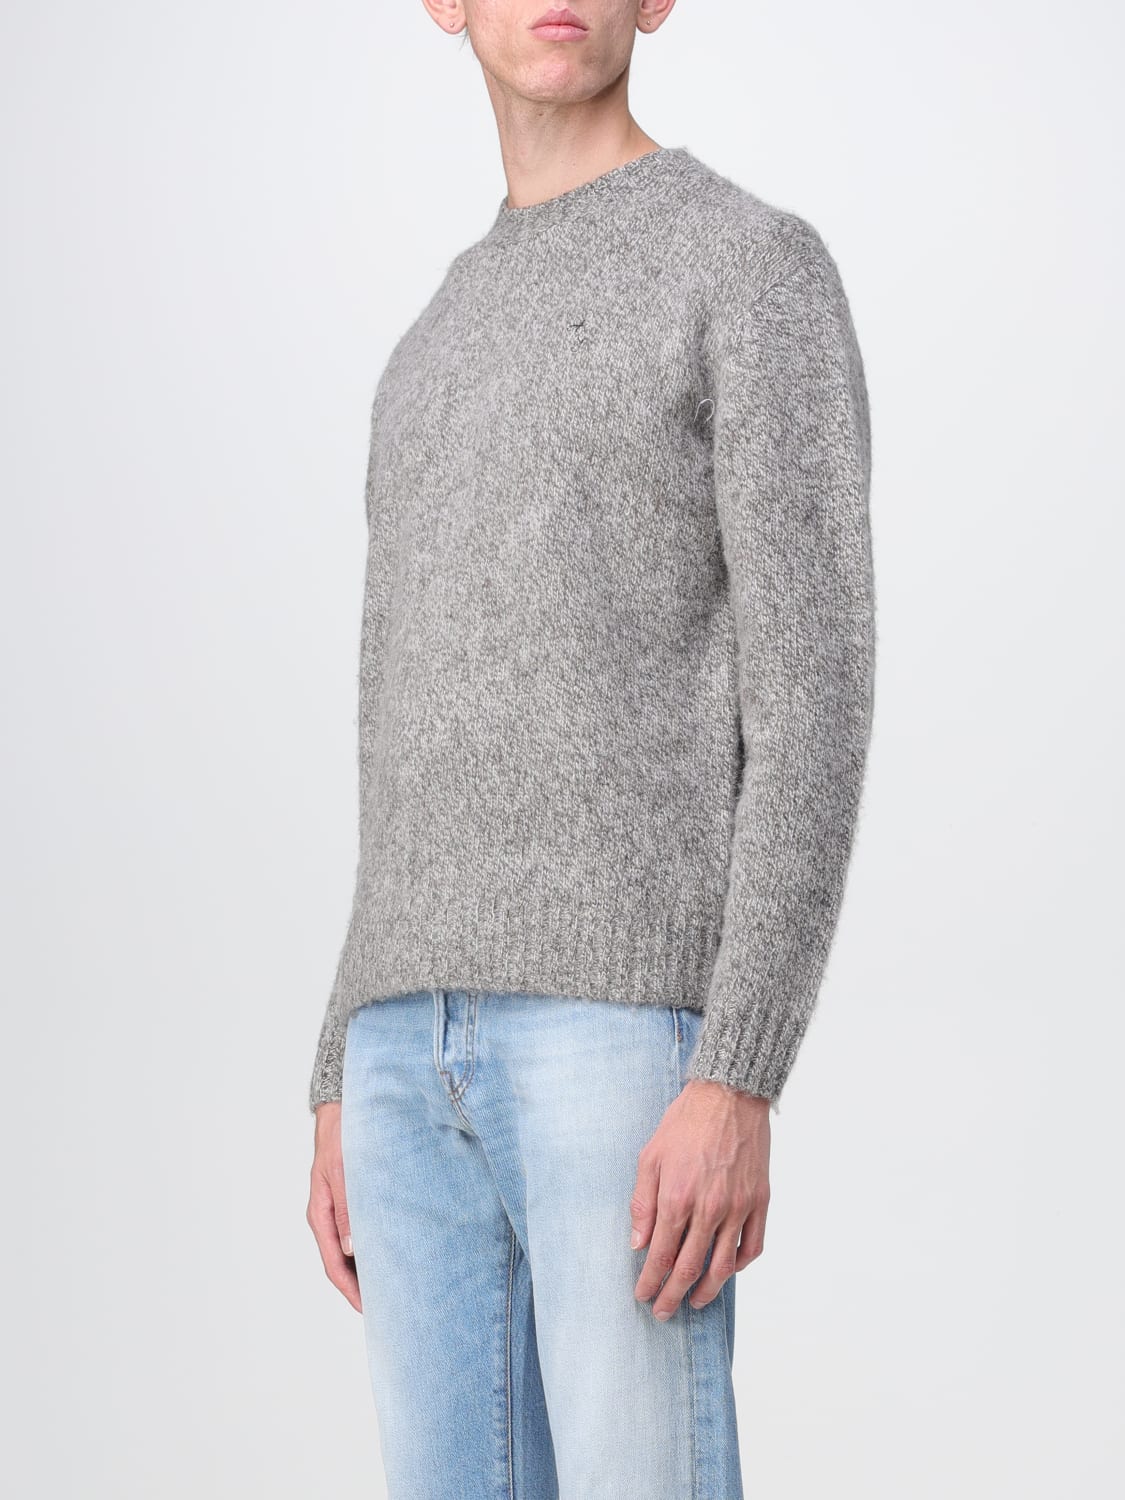 Acne Studios Round-Neck Sweater